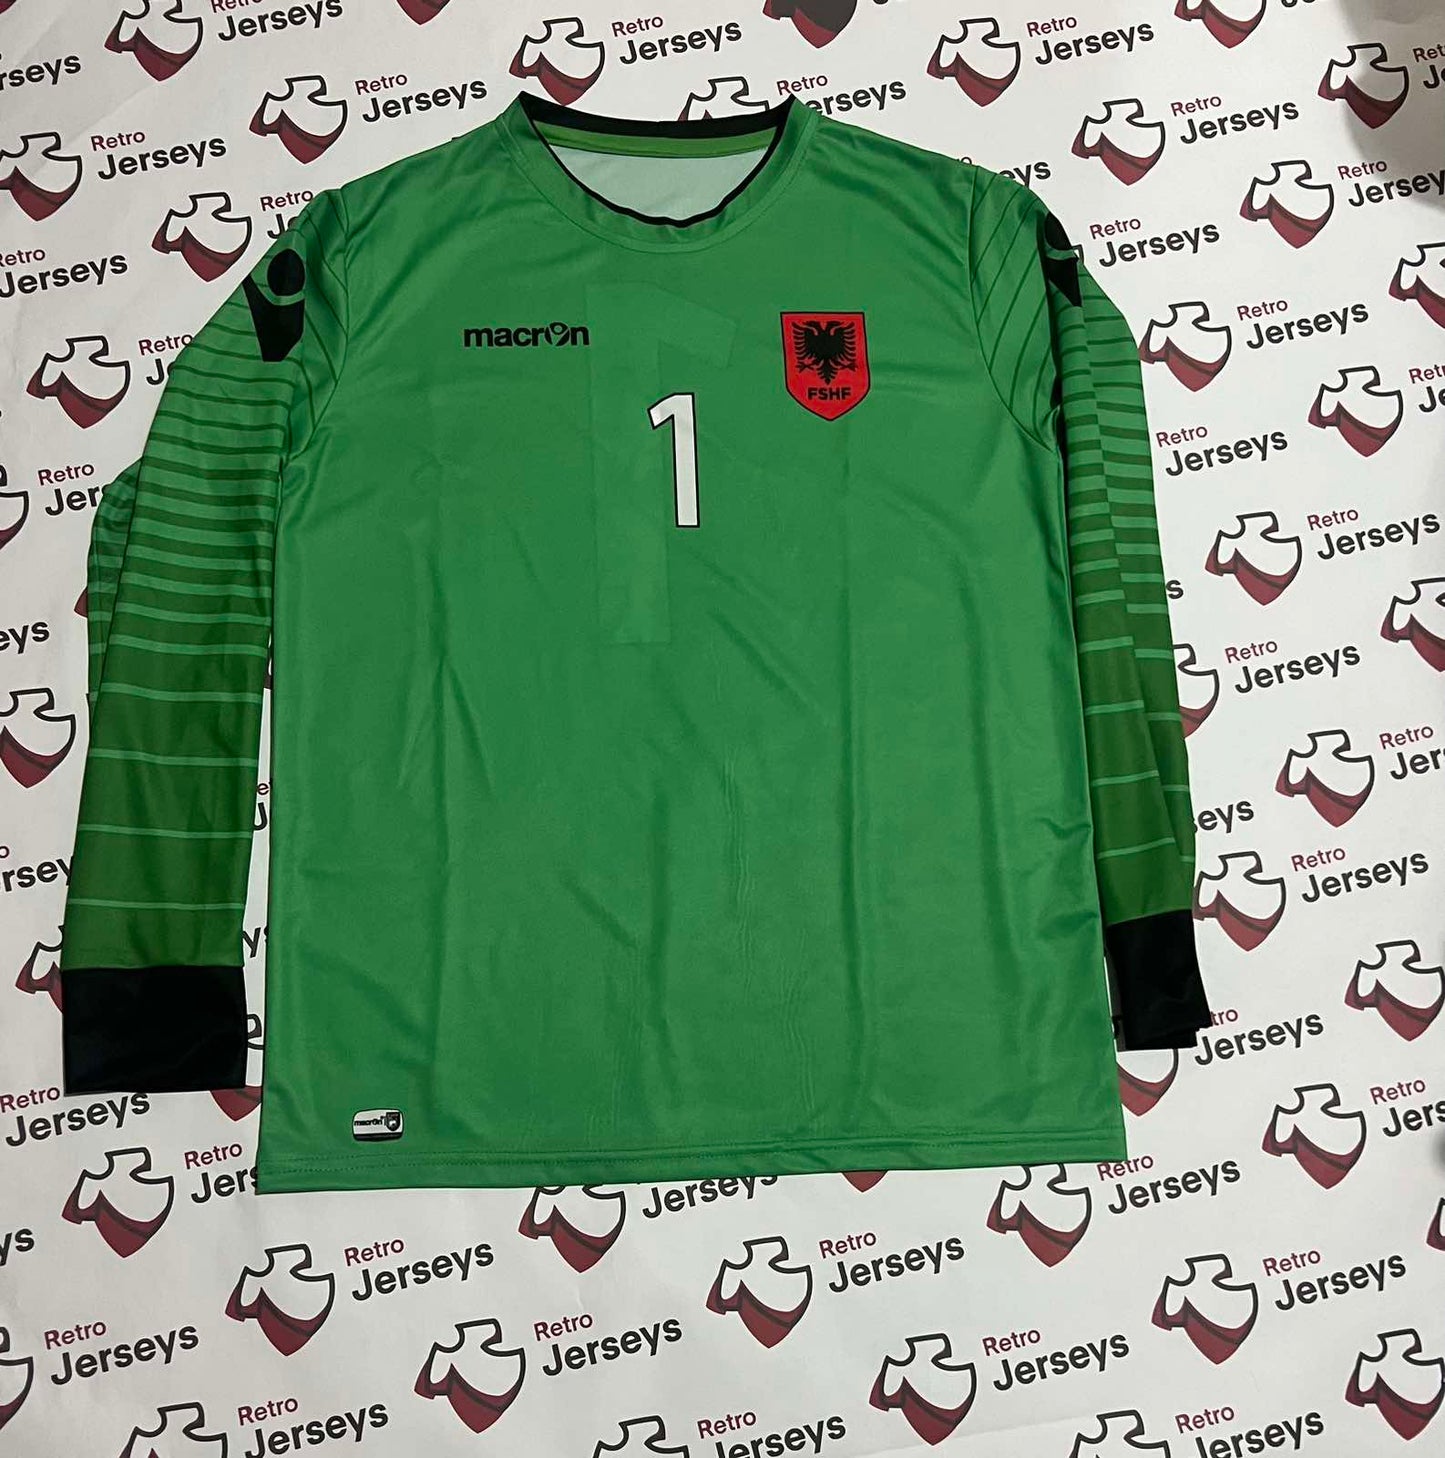 Albania National Shirt 2016-2017 Goalkeeper - Retro Jerseys, Fanella Shqipërisë - Retro Jerseys